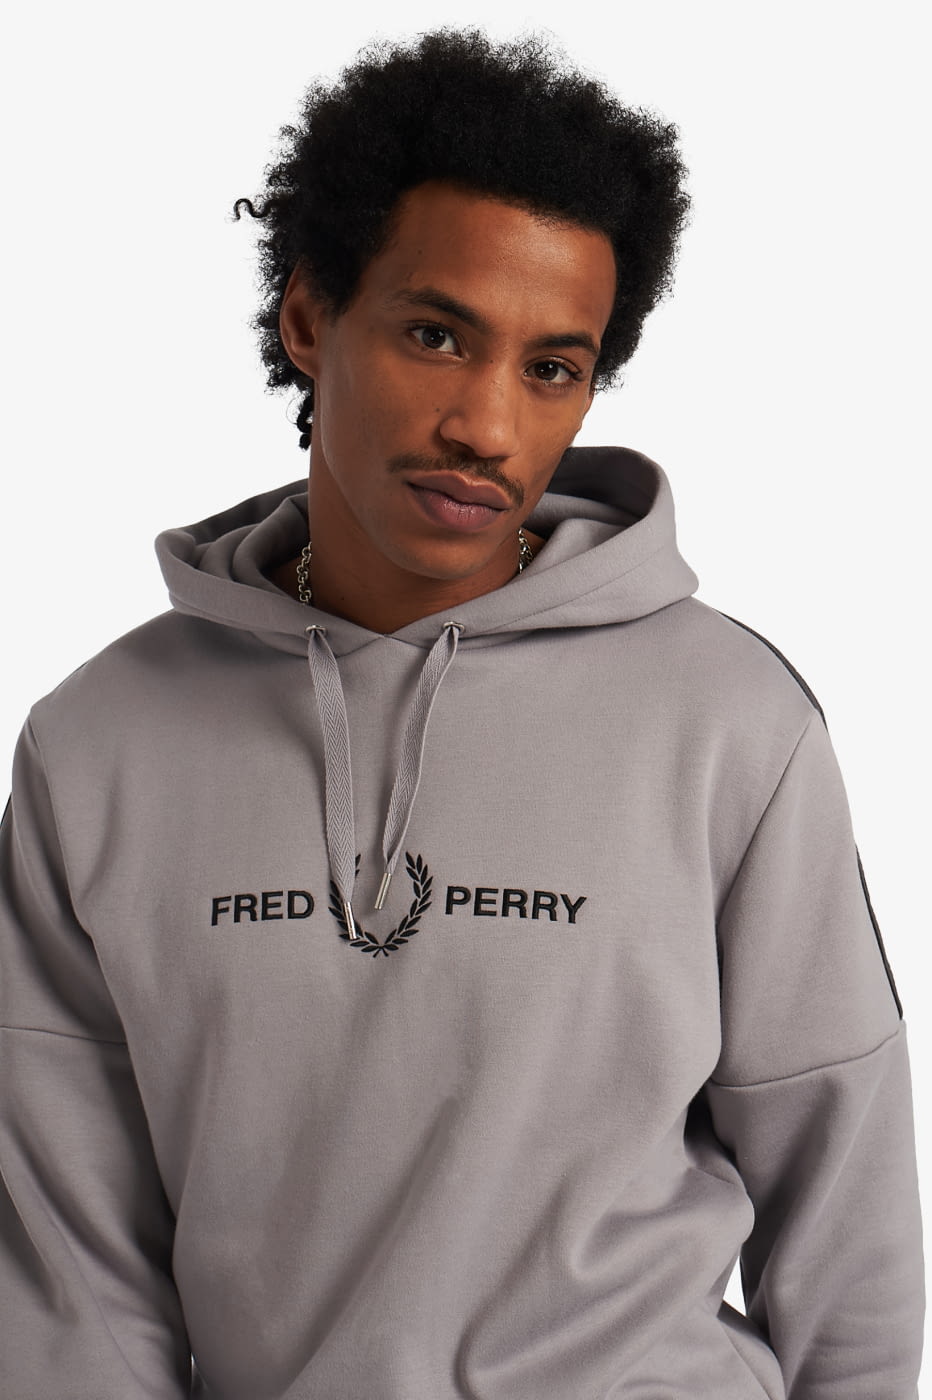 FRED PERRY sudadera con capucha